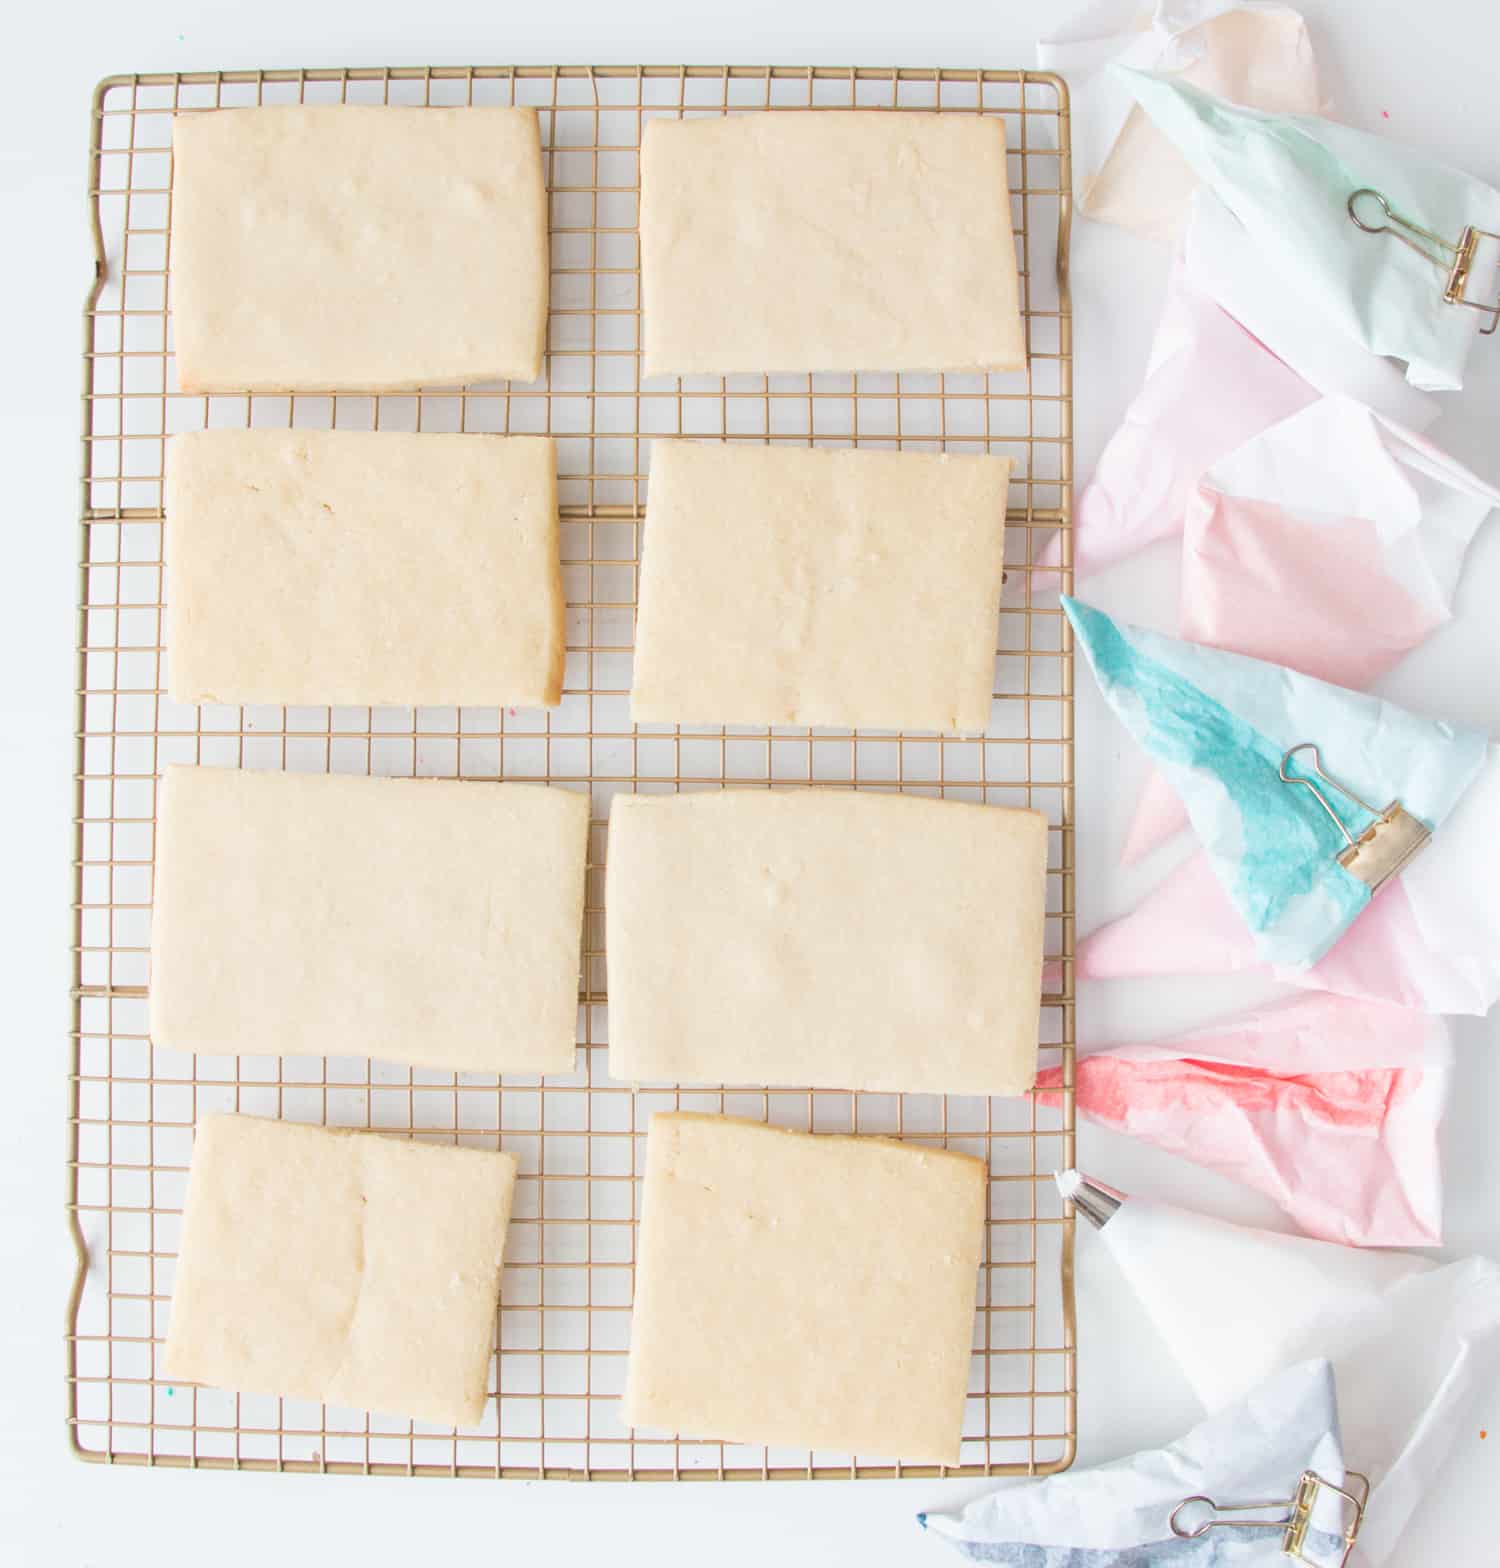 Make Wall Weaving Sugar Cookies